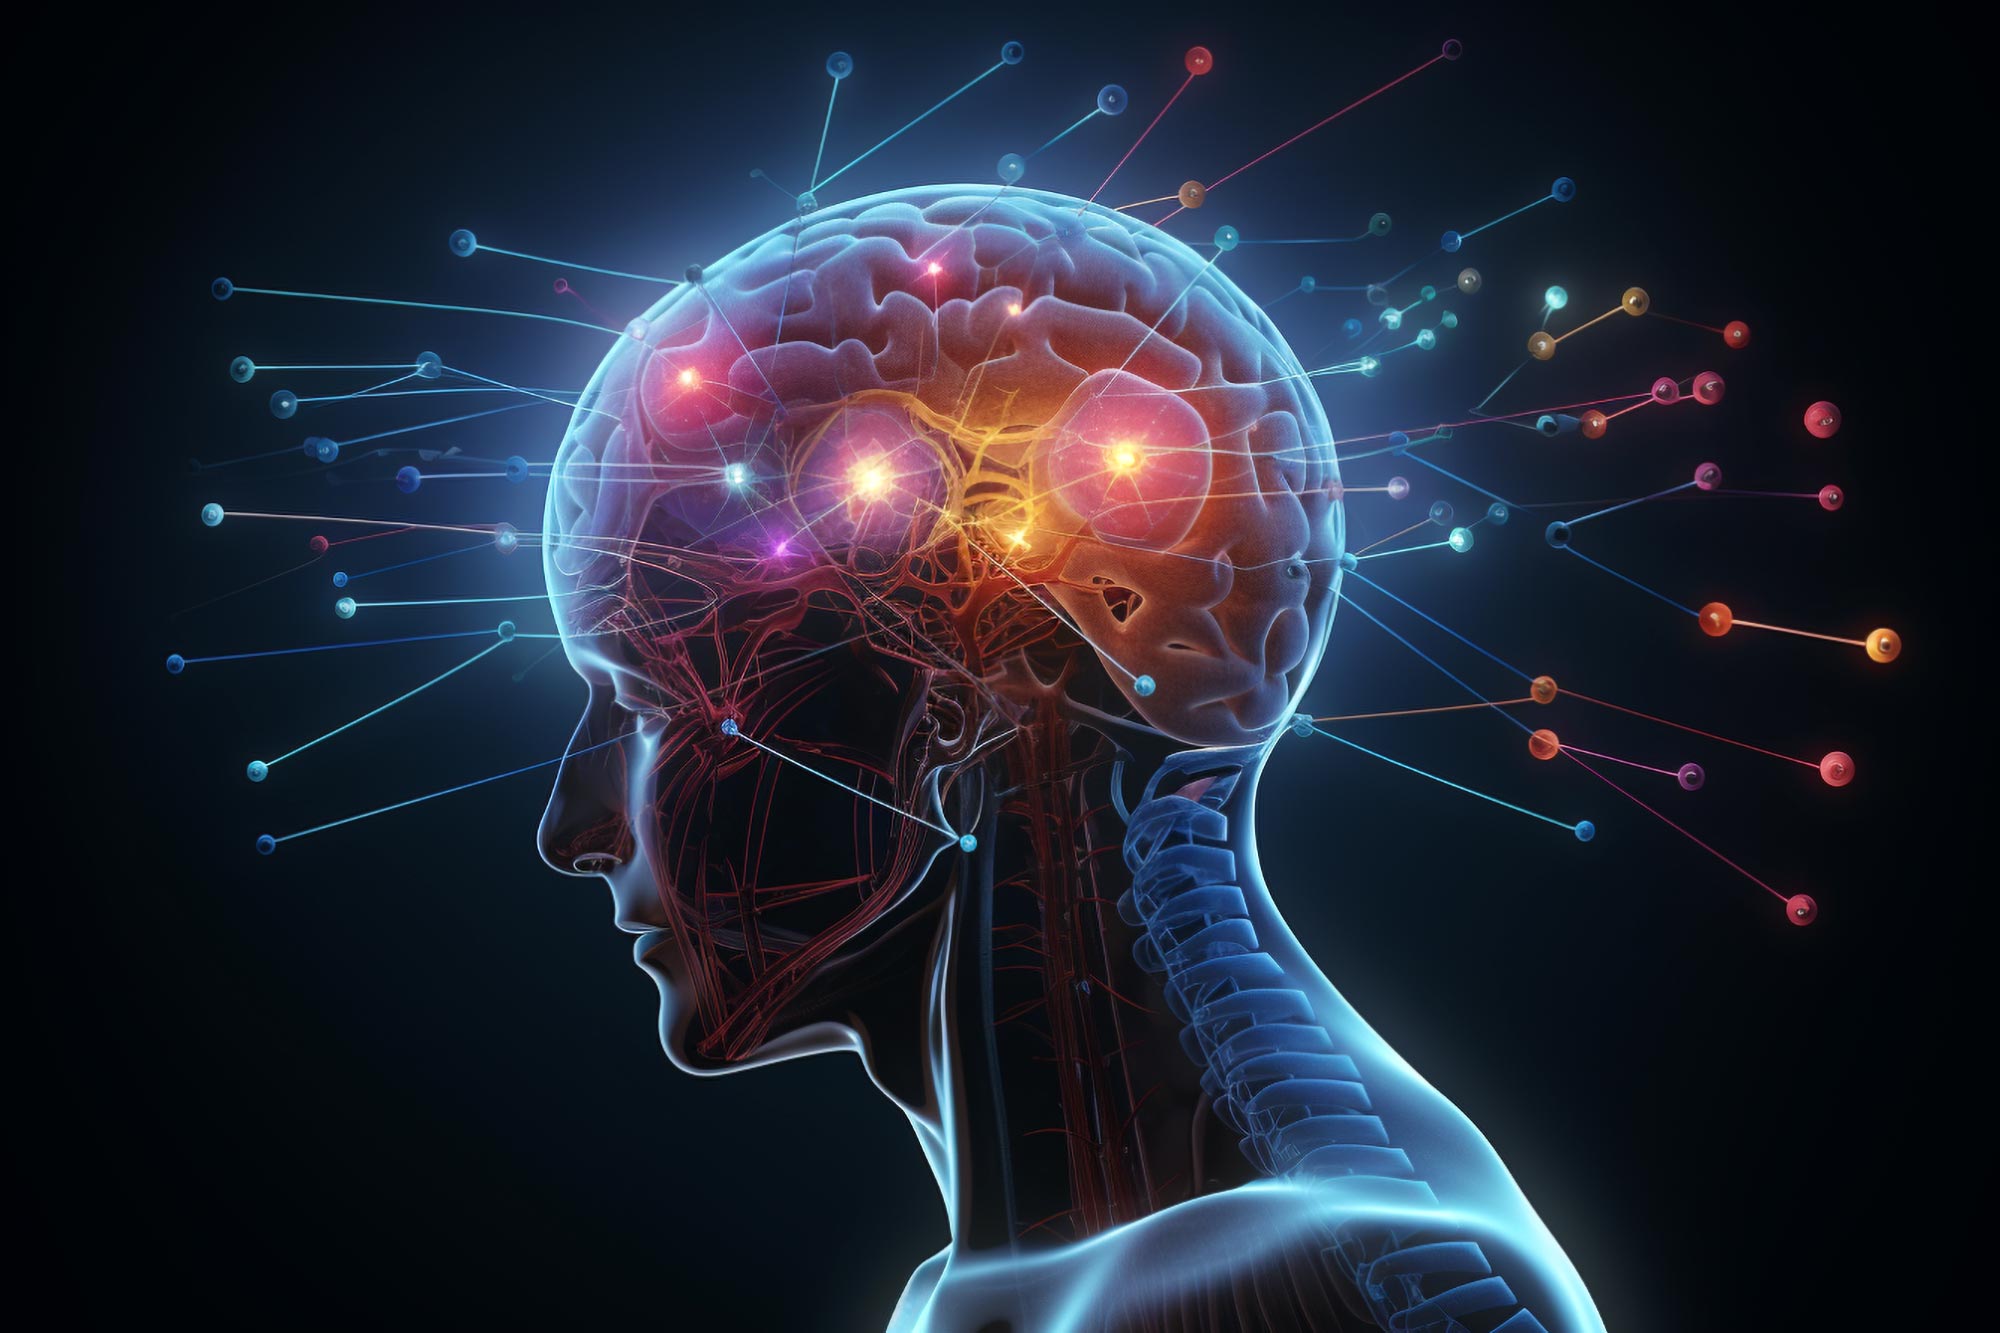 اكتشاف “تغيير النموذج” – يتحدى الباحثون المبادئ الأساسية لعلم الأعصاب الجزيئي